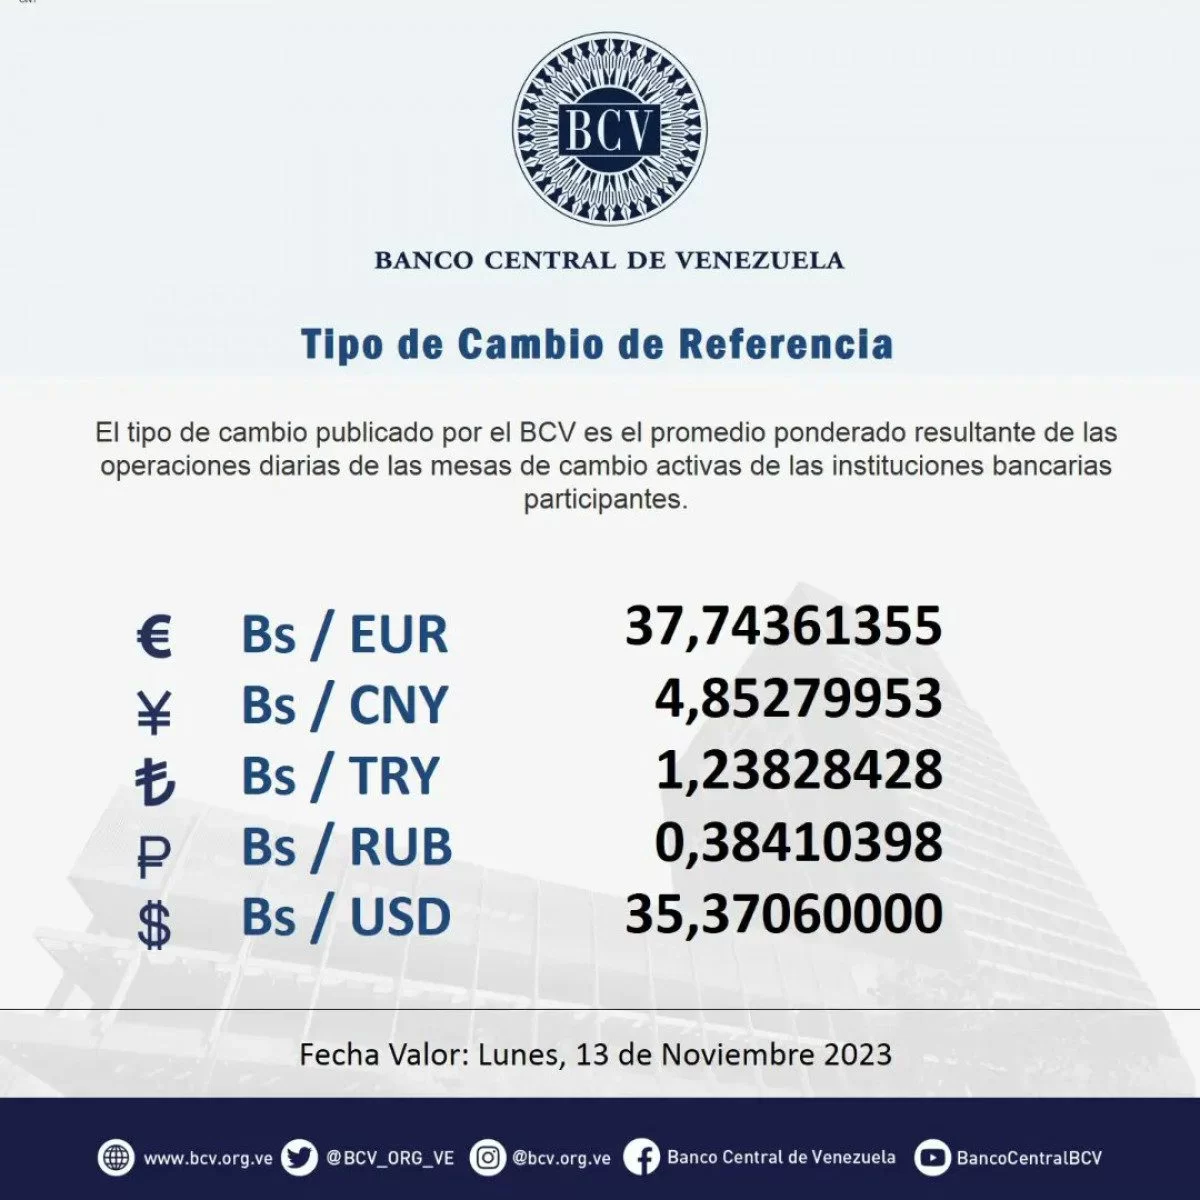 dolartoday en venezuela precio del dolar este domingo 12 de noviembre de 2023 laverdaddemonagas.com bcv654